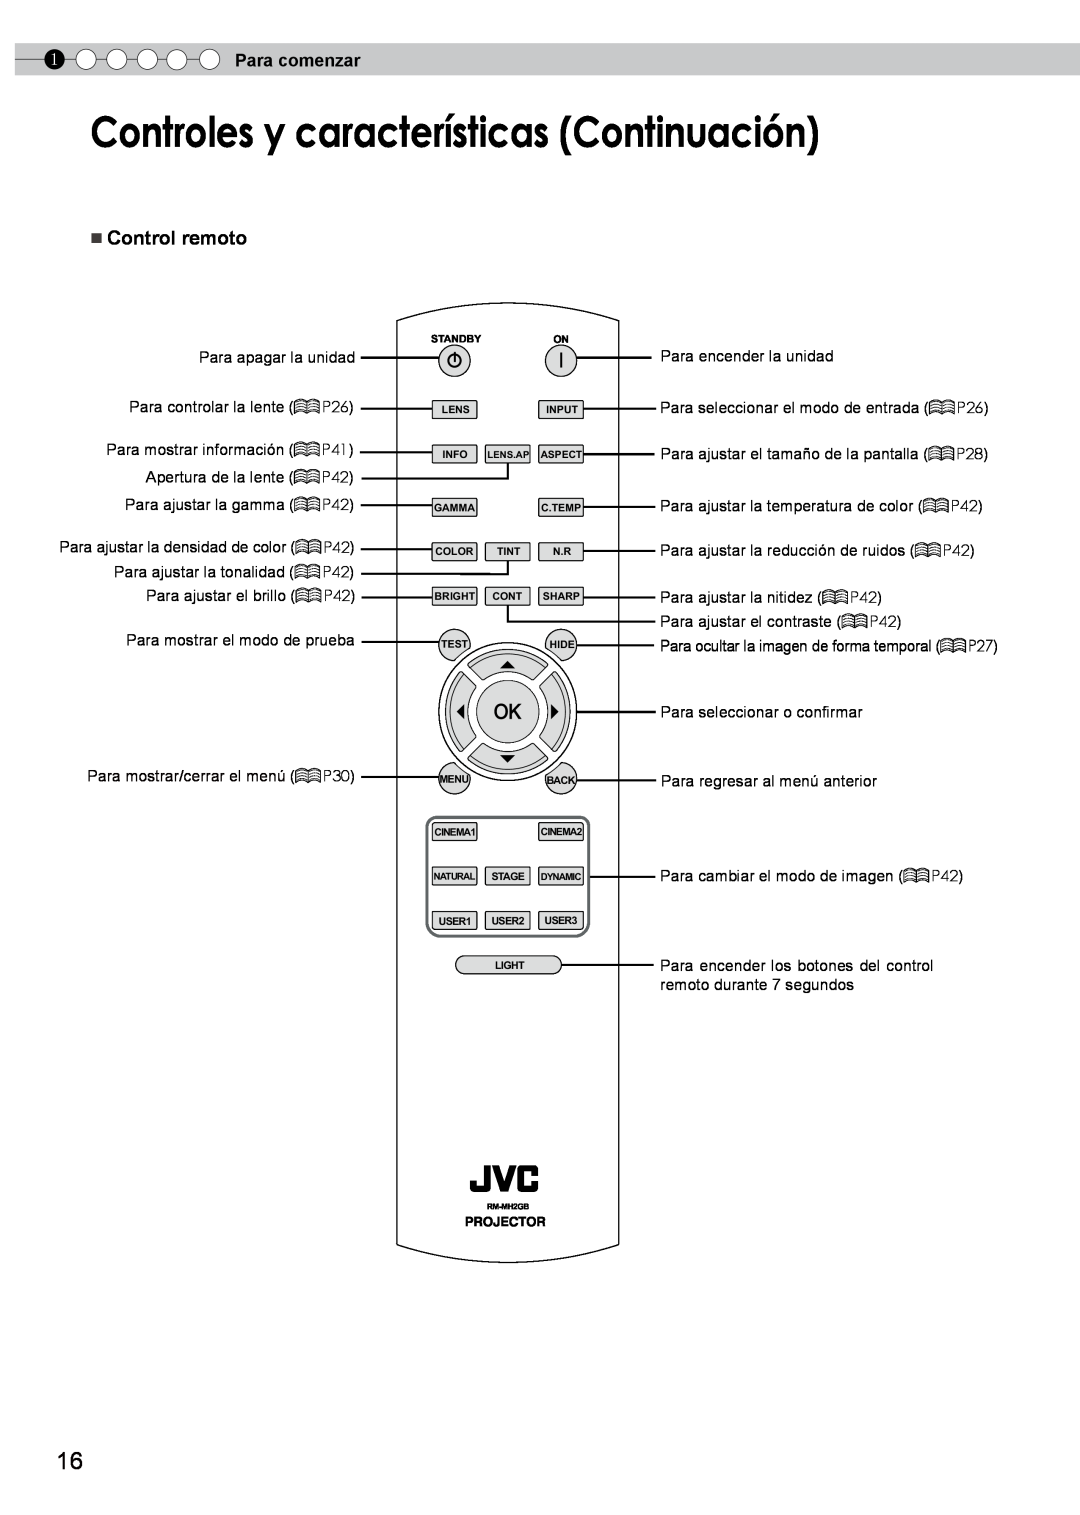 JVC PB006596599-0 Controles y características Continuación, Control remoto, Para comenzar, Para mostrar/cerrar el menú P30 